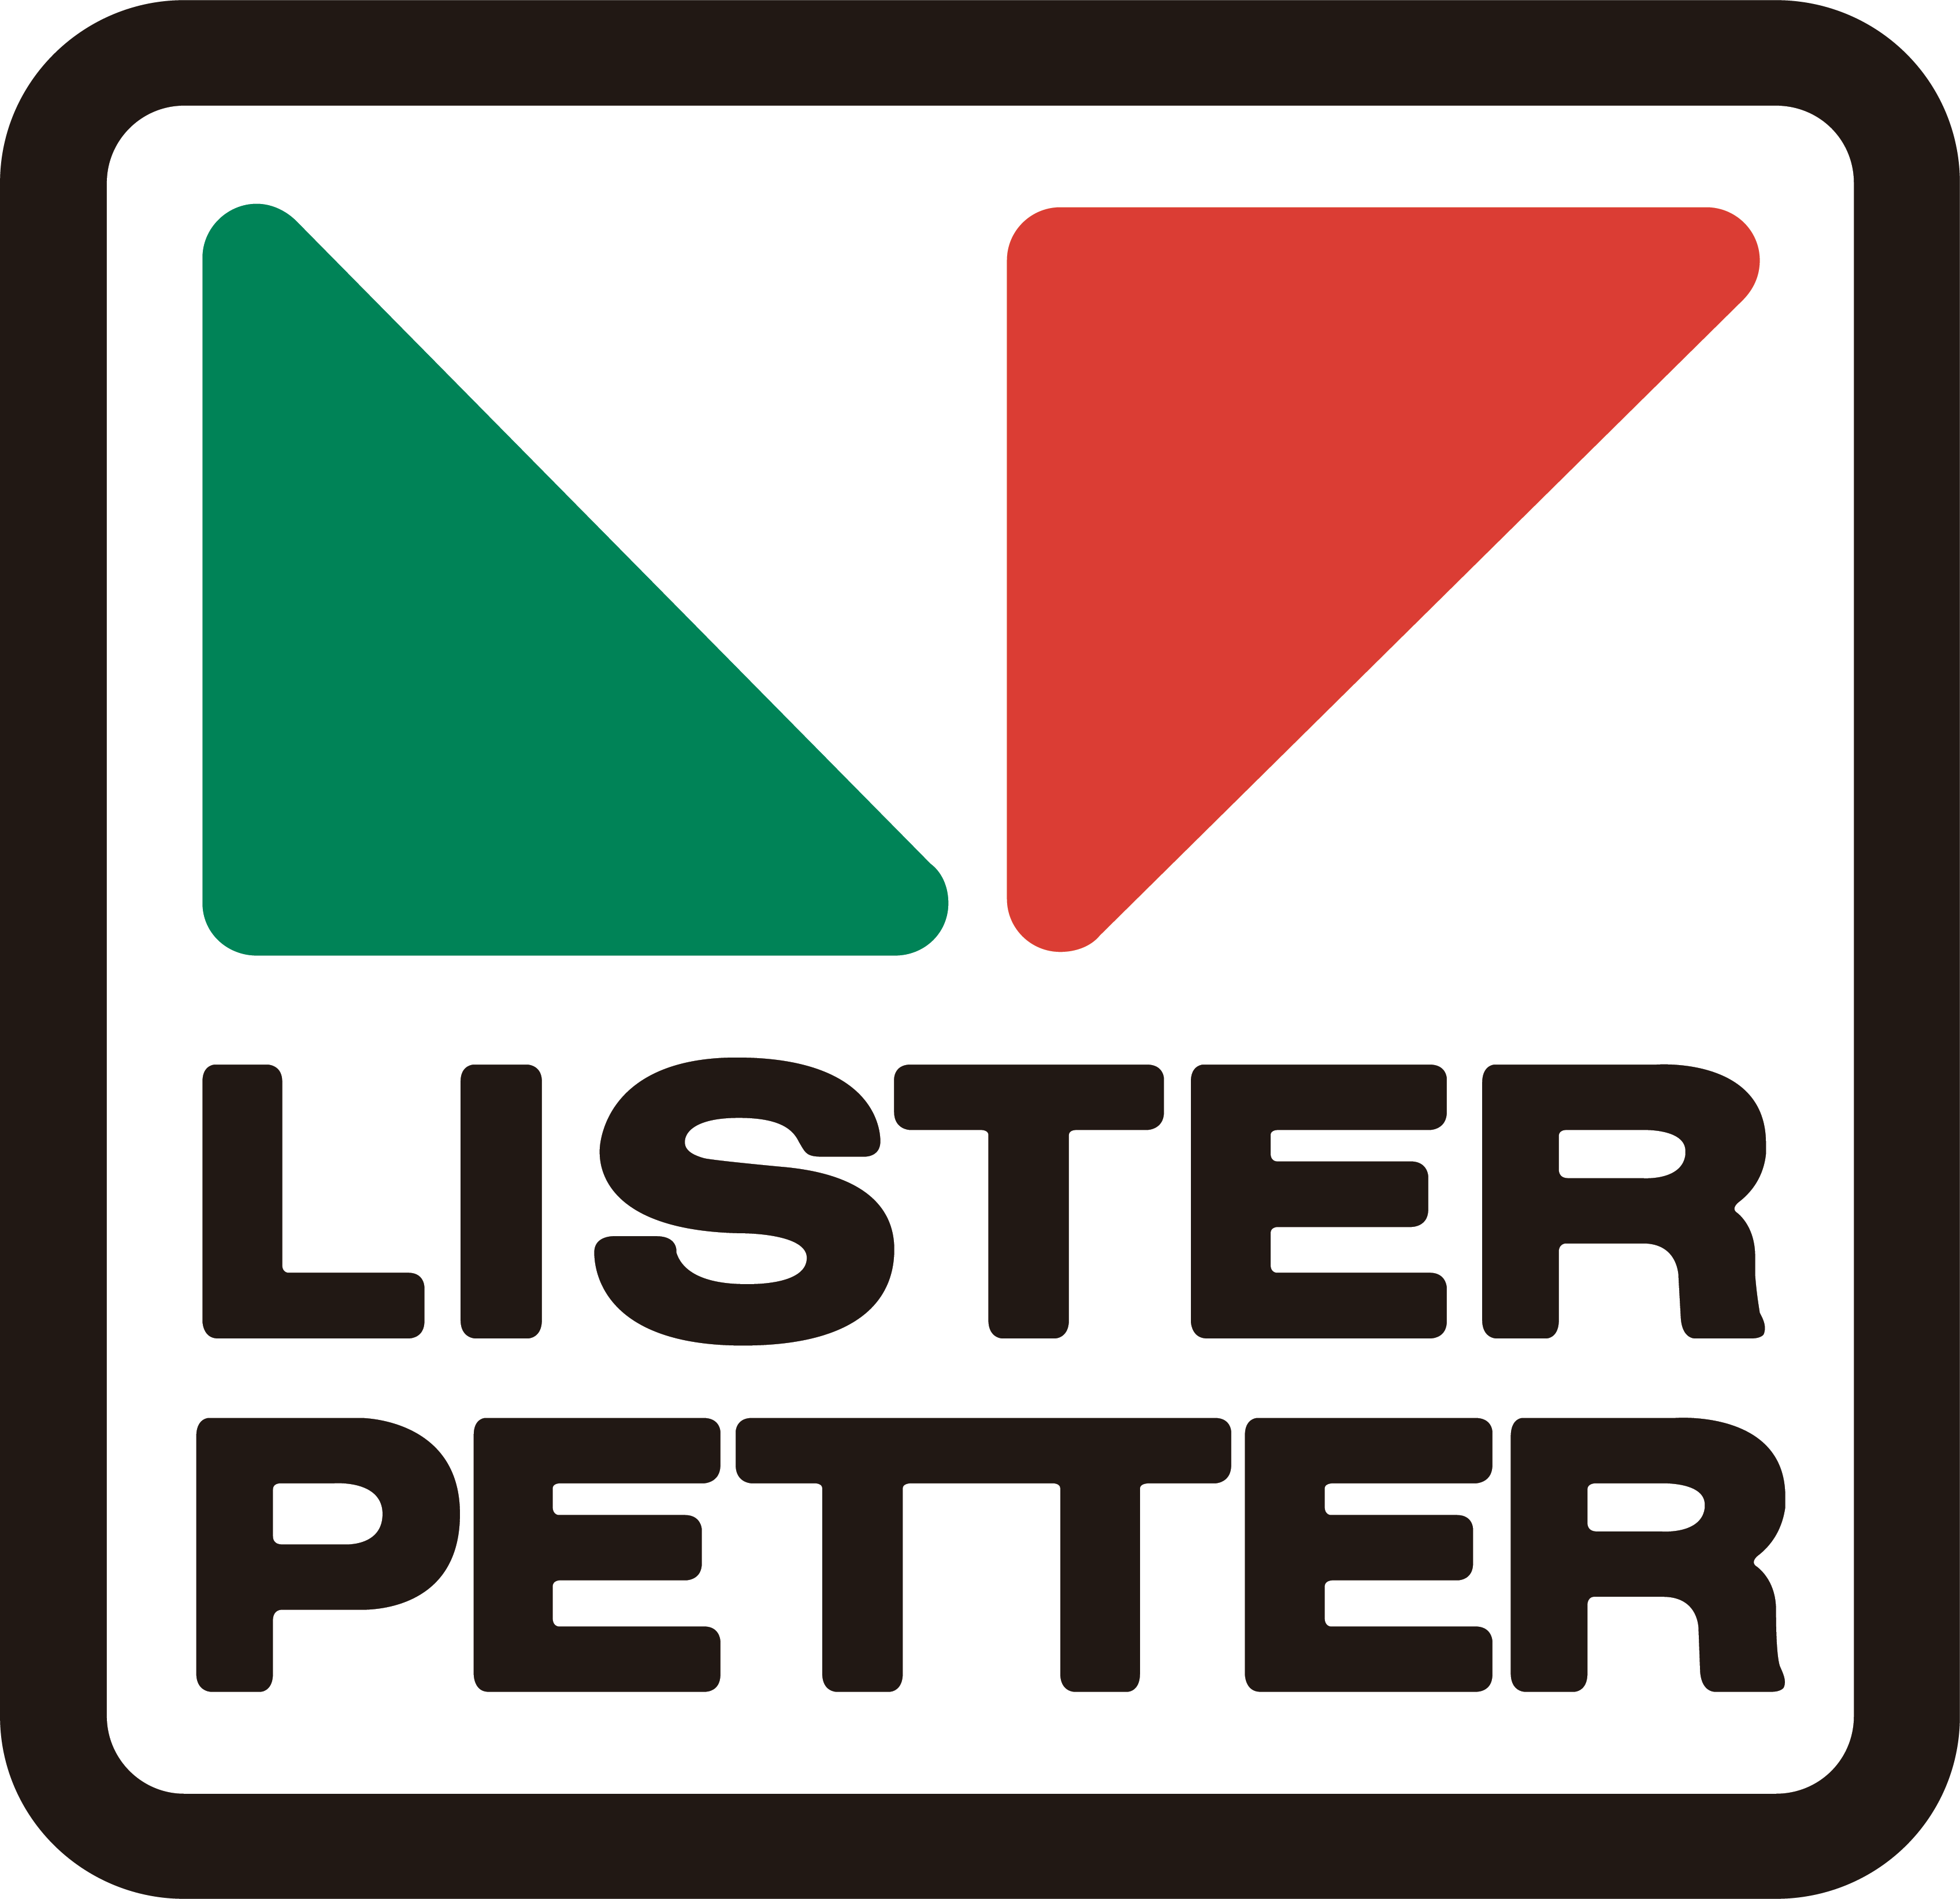 LISTER-PETTER-LOGO